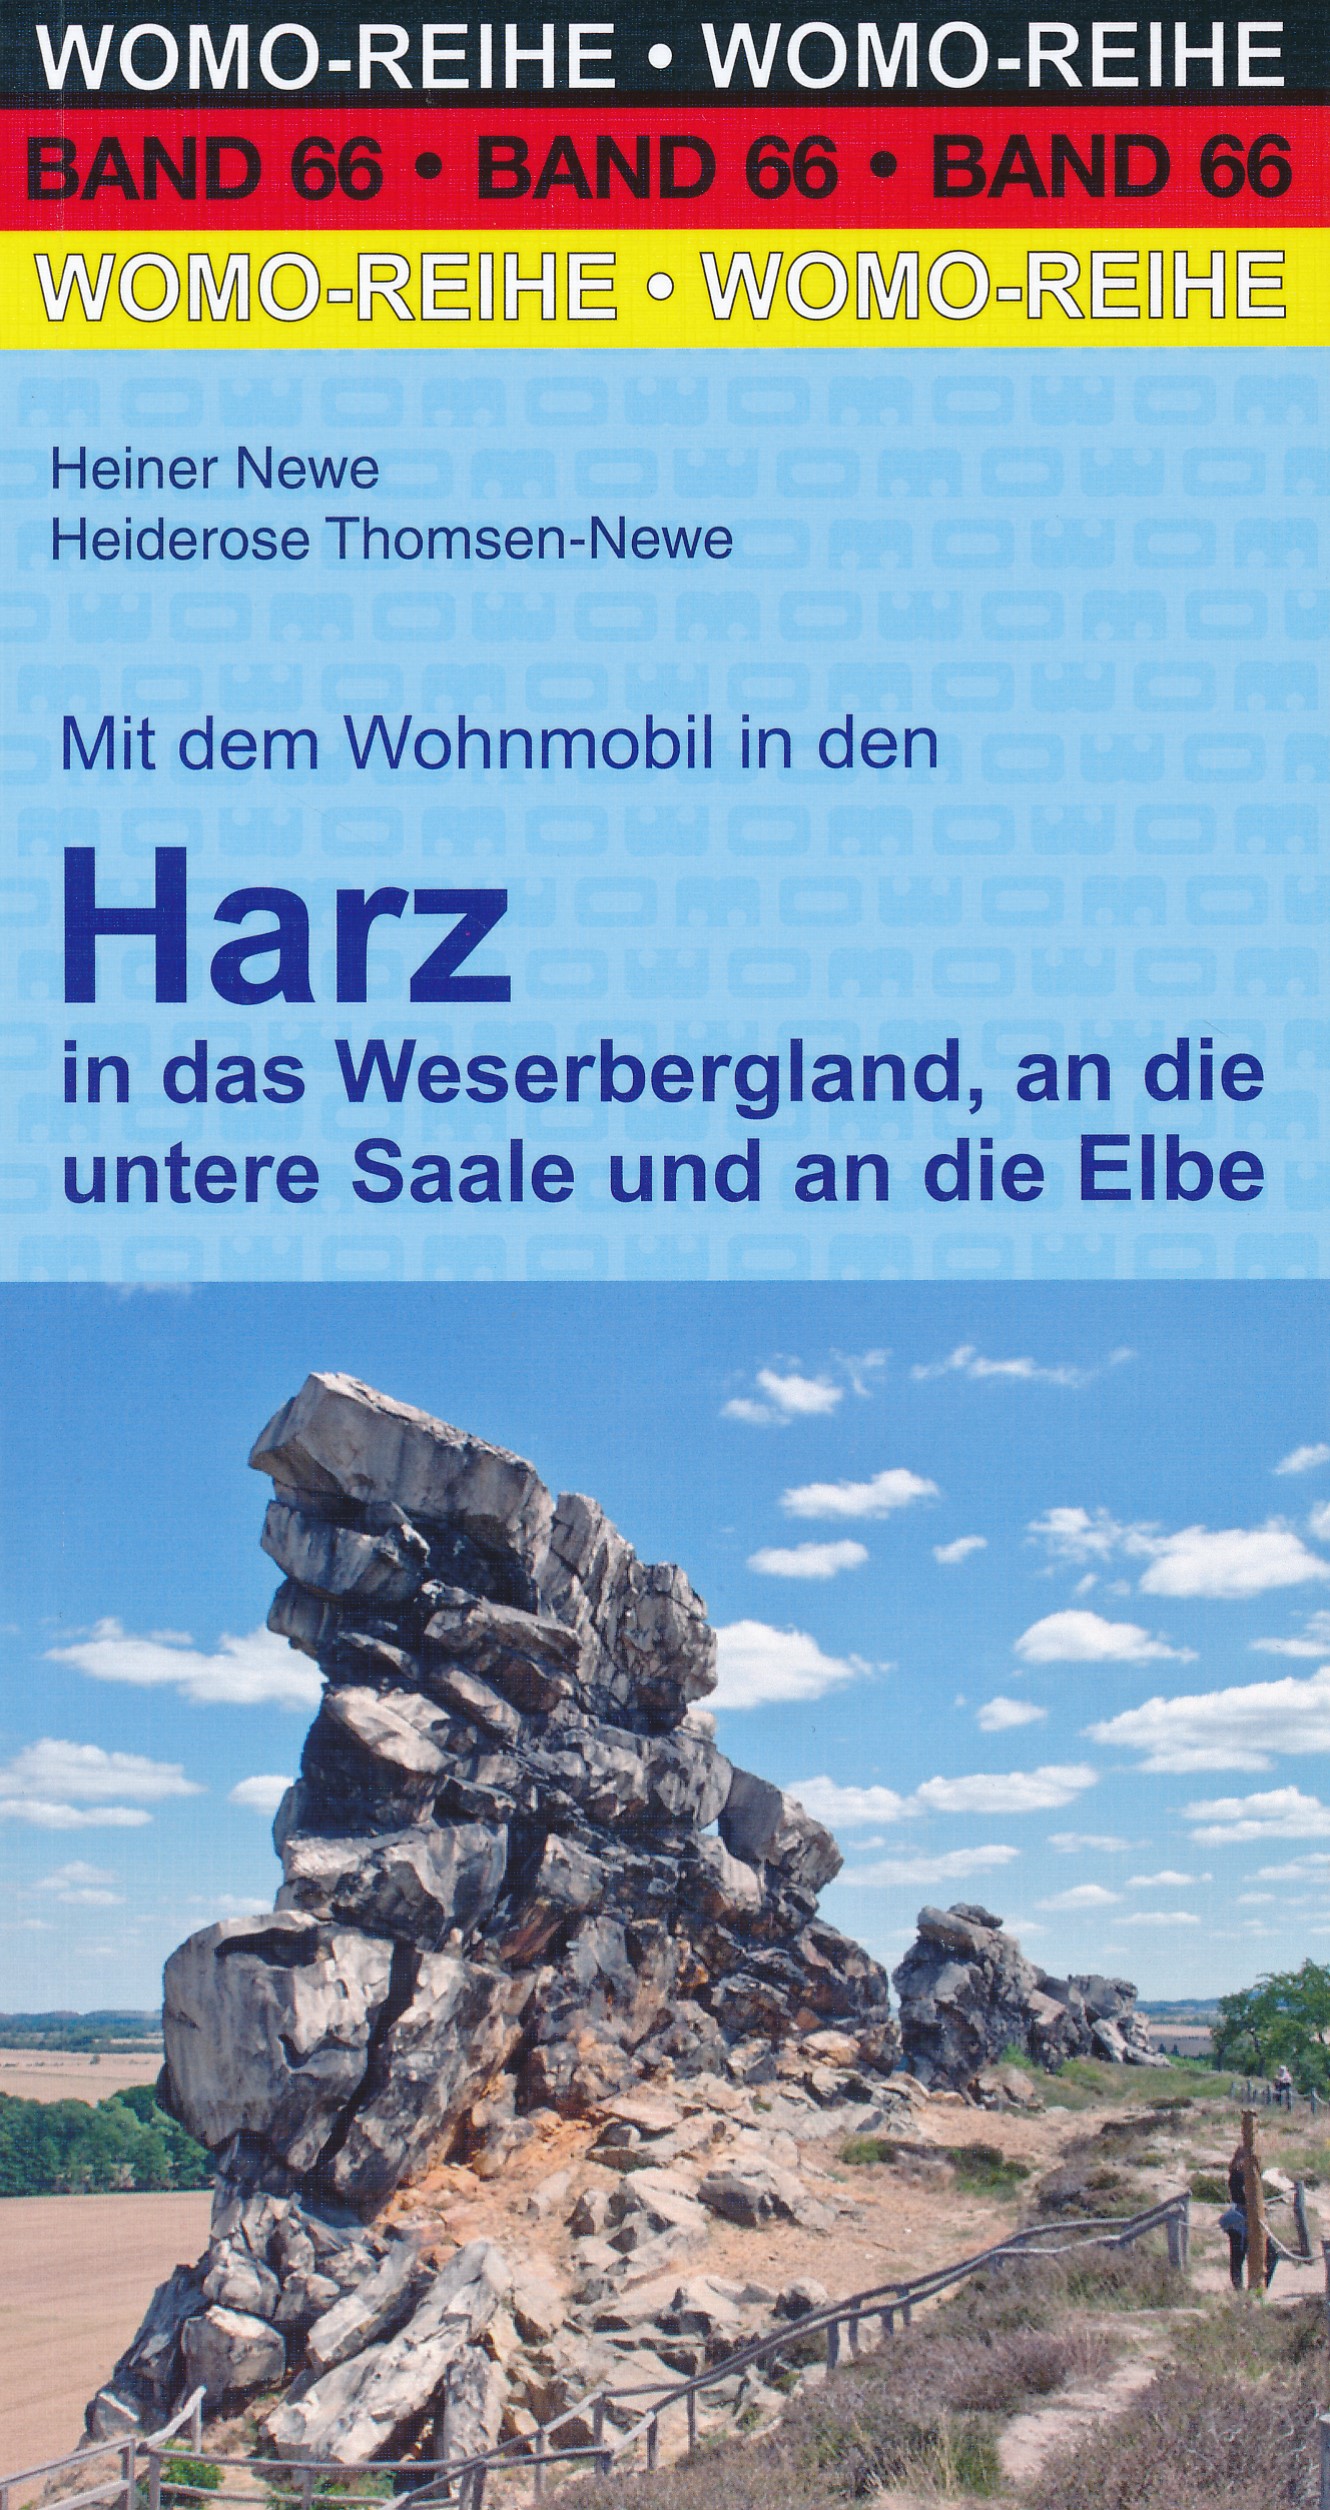 Online bestellen: Campergids 66 Mit dem Wohnmobil in den Harz | WOMO verlag